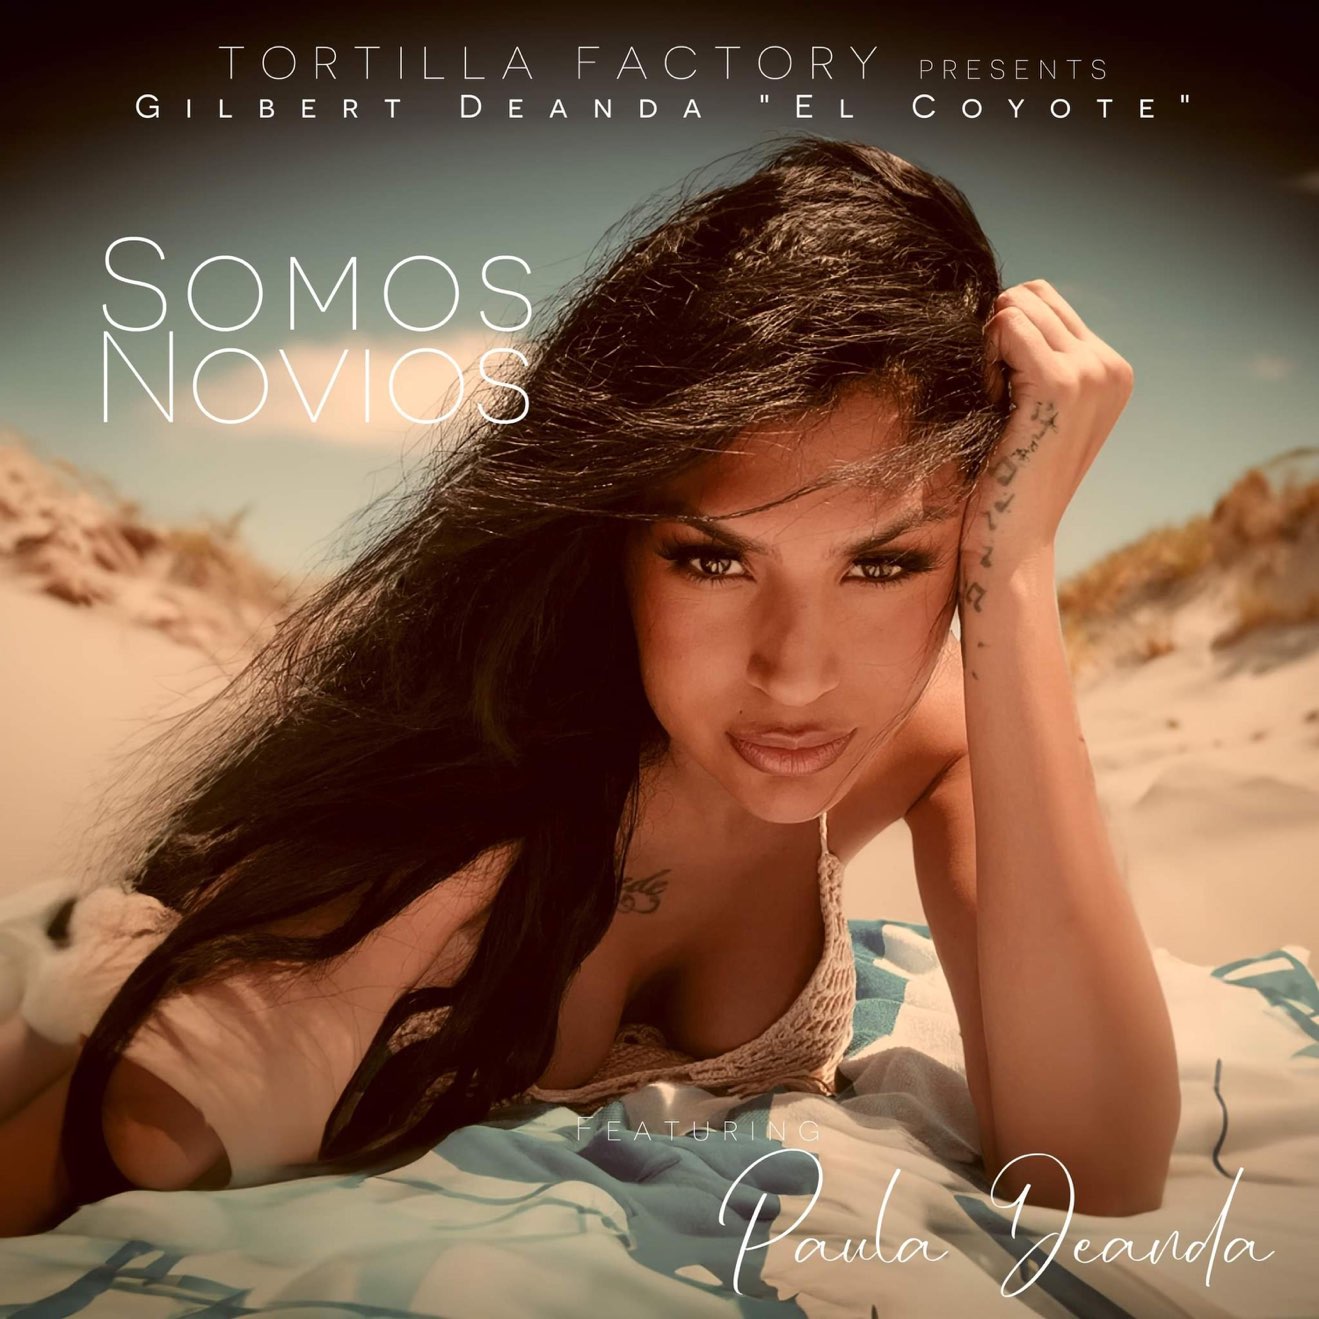 Tortilla Factory – Somos Novios (feat. Gilbert “El Coyote” Deanda & Paula Deanda) – Single (2024) [iTunes Match M4A]